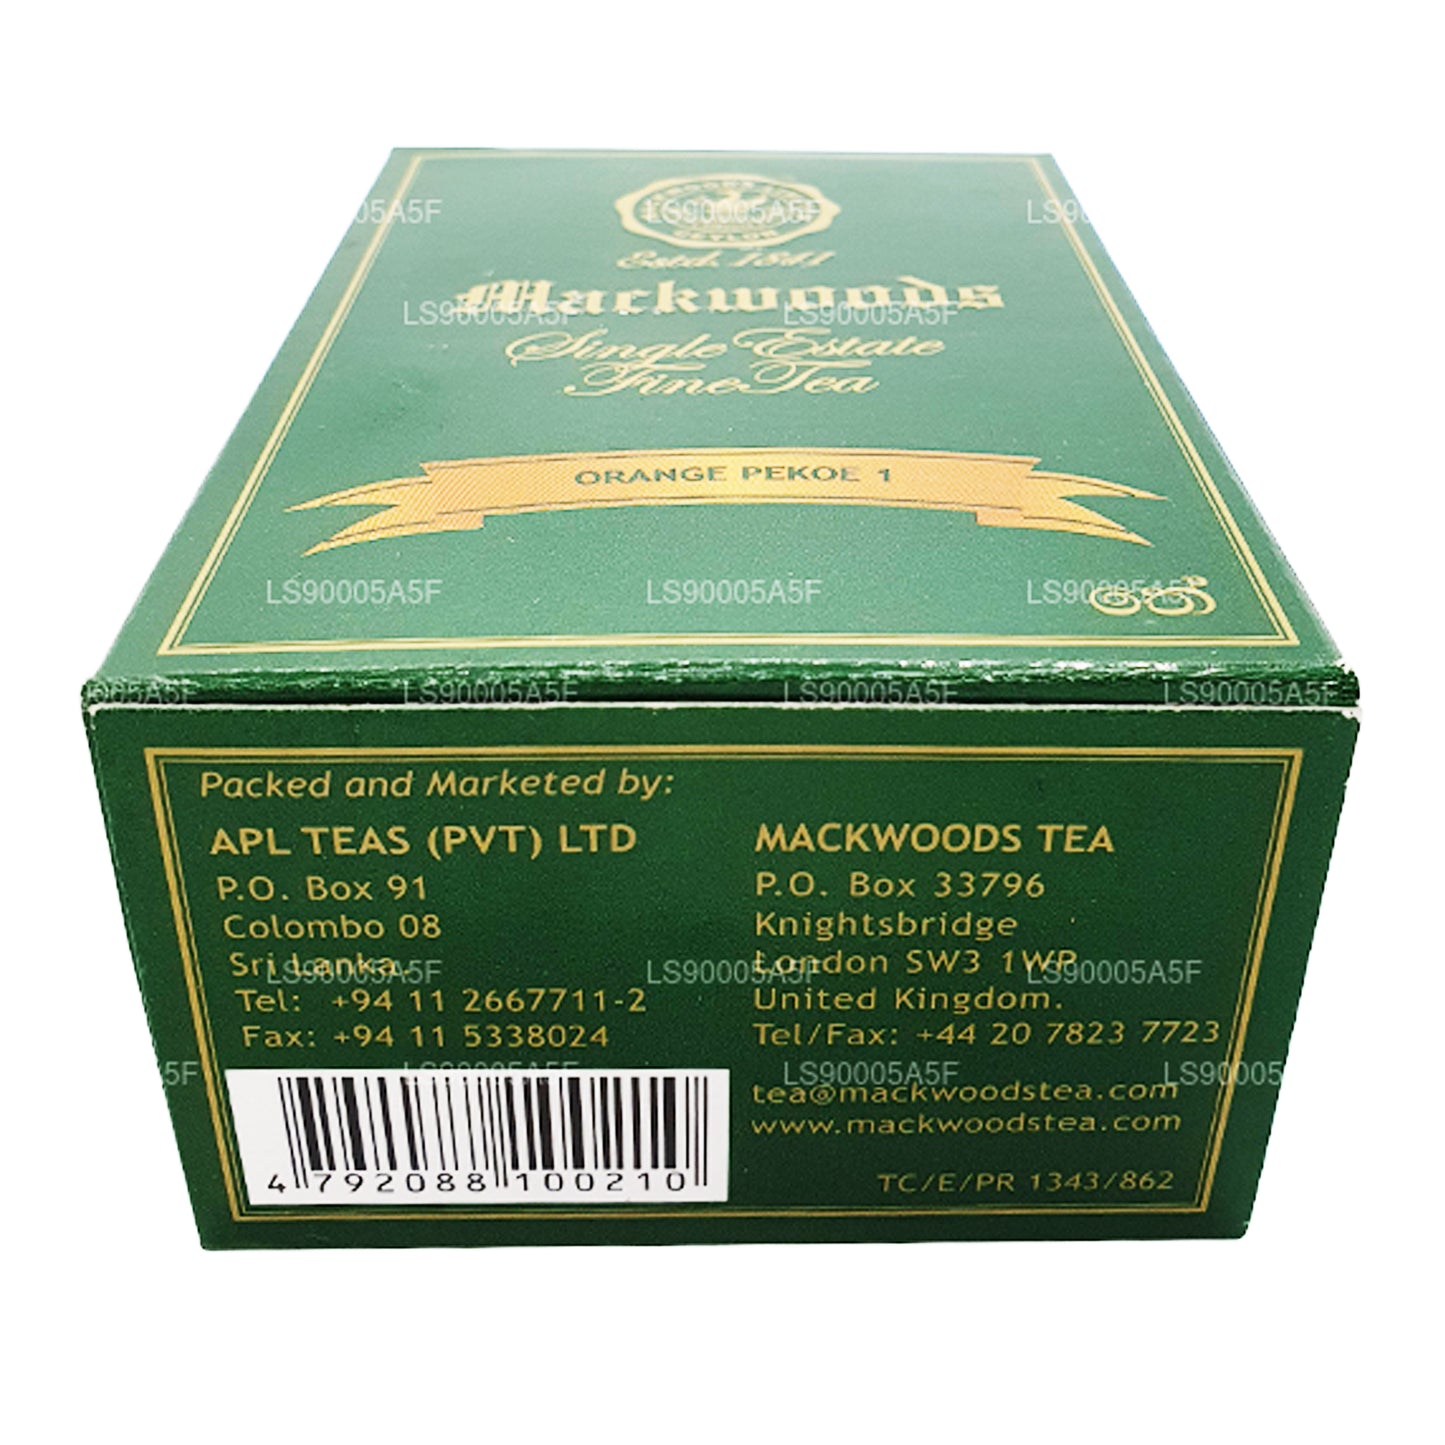 Mackwoods Portakal PEKOE 1 Çay (100g)